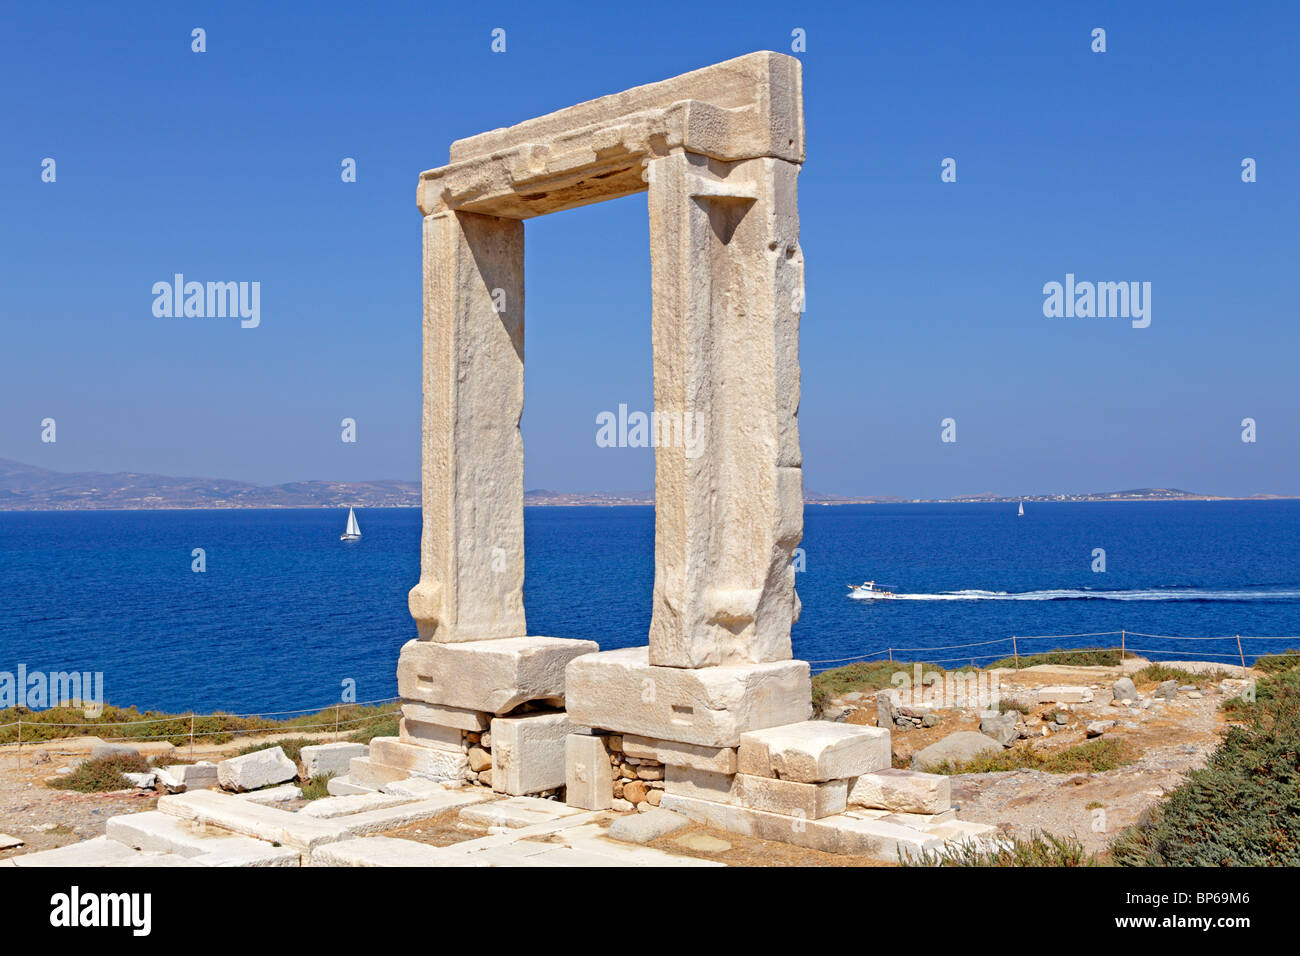 La porte du temple, Portara, la ville de Naxos, l'île de Naxos, Cyclades, Mer Égée, Grèce Banque D'Images